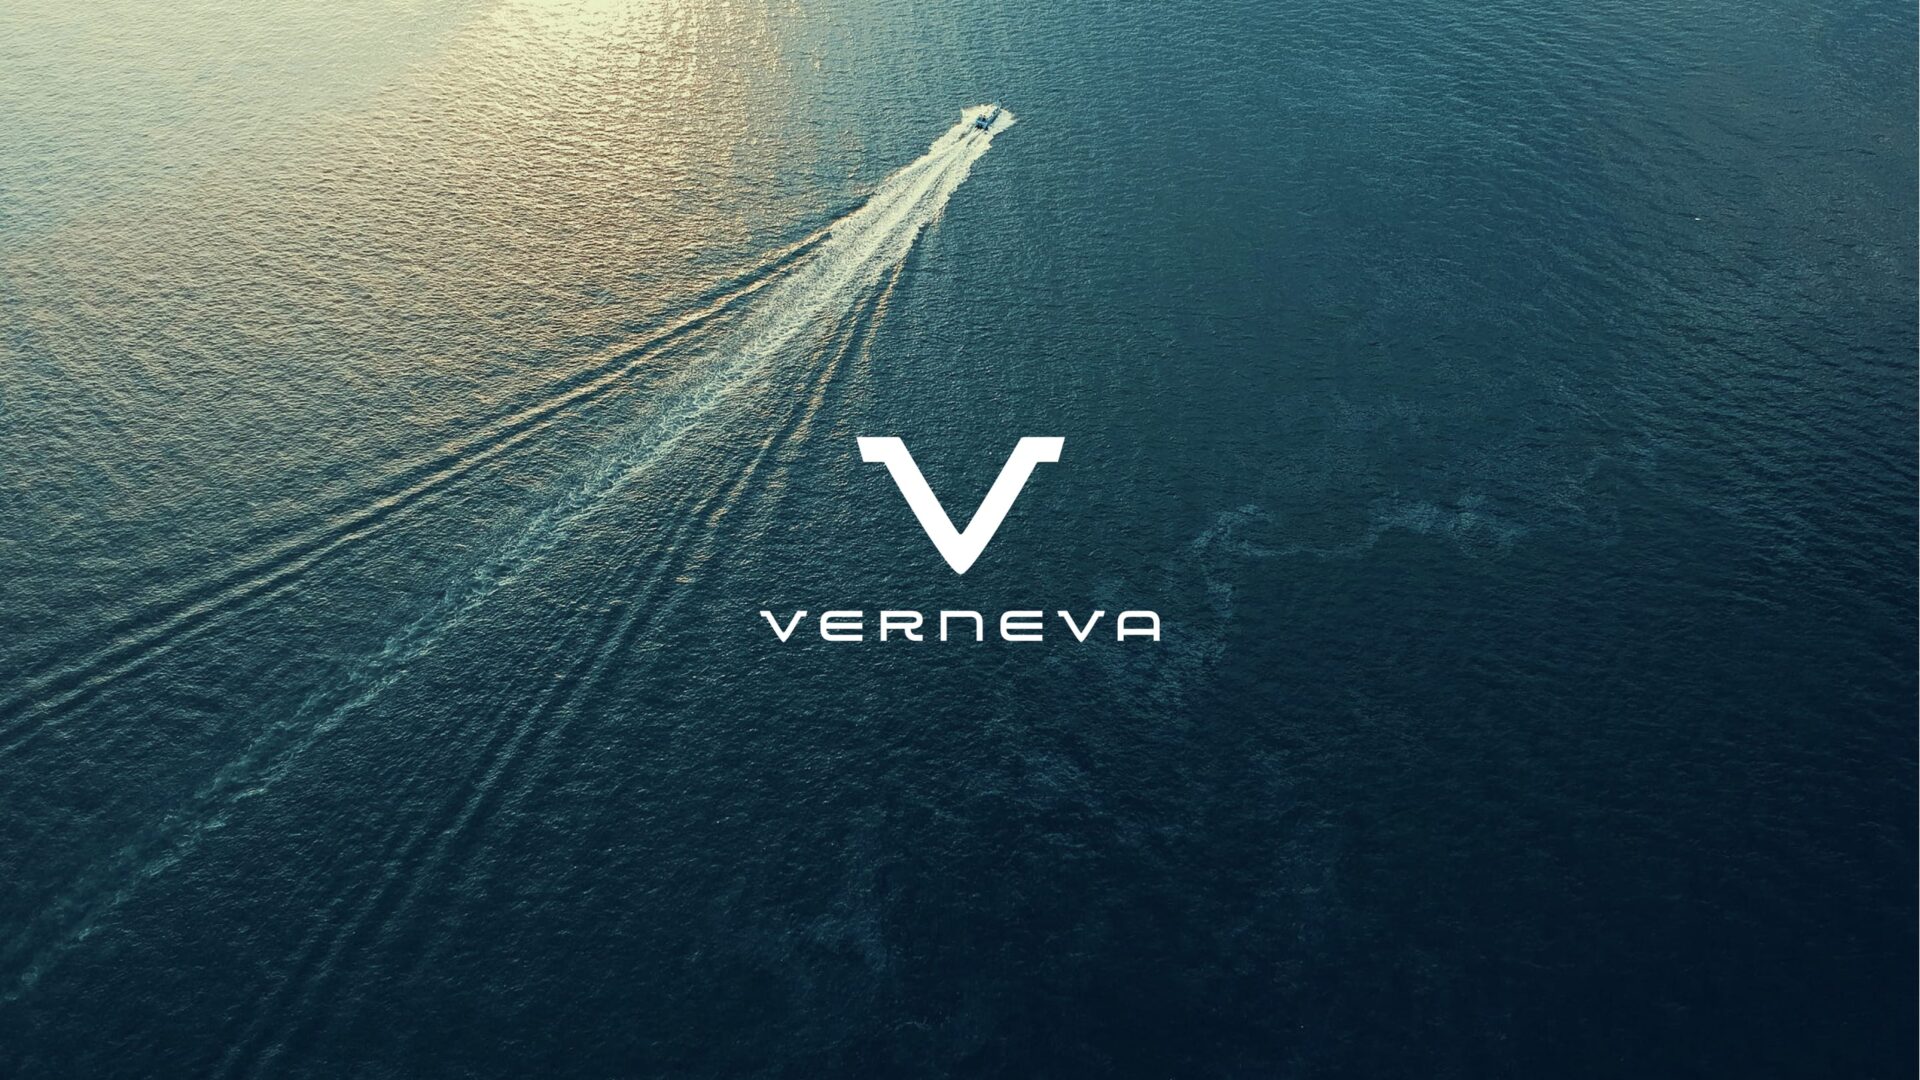 Verneva - The future is current